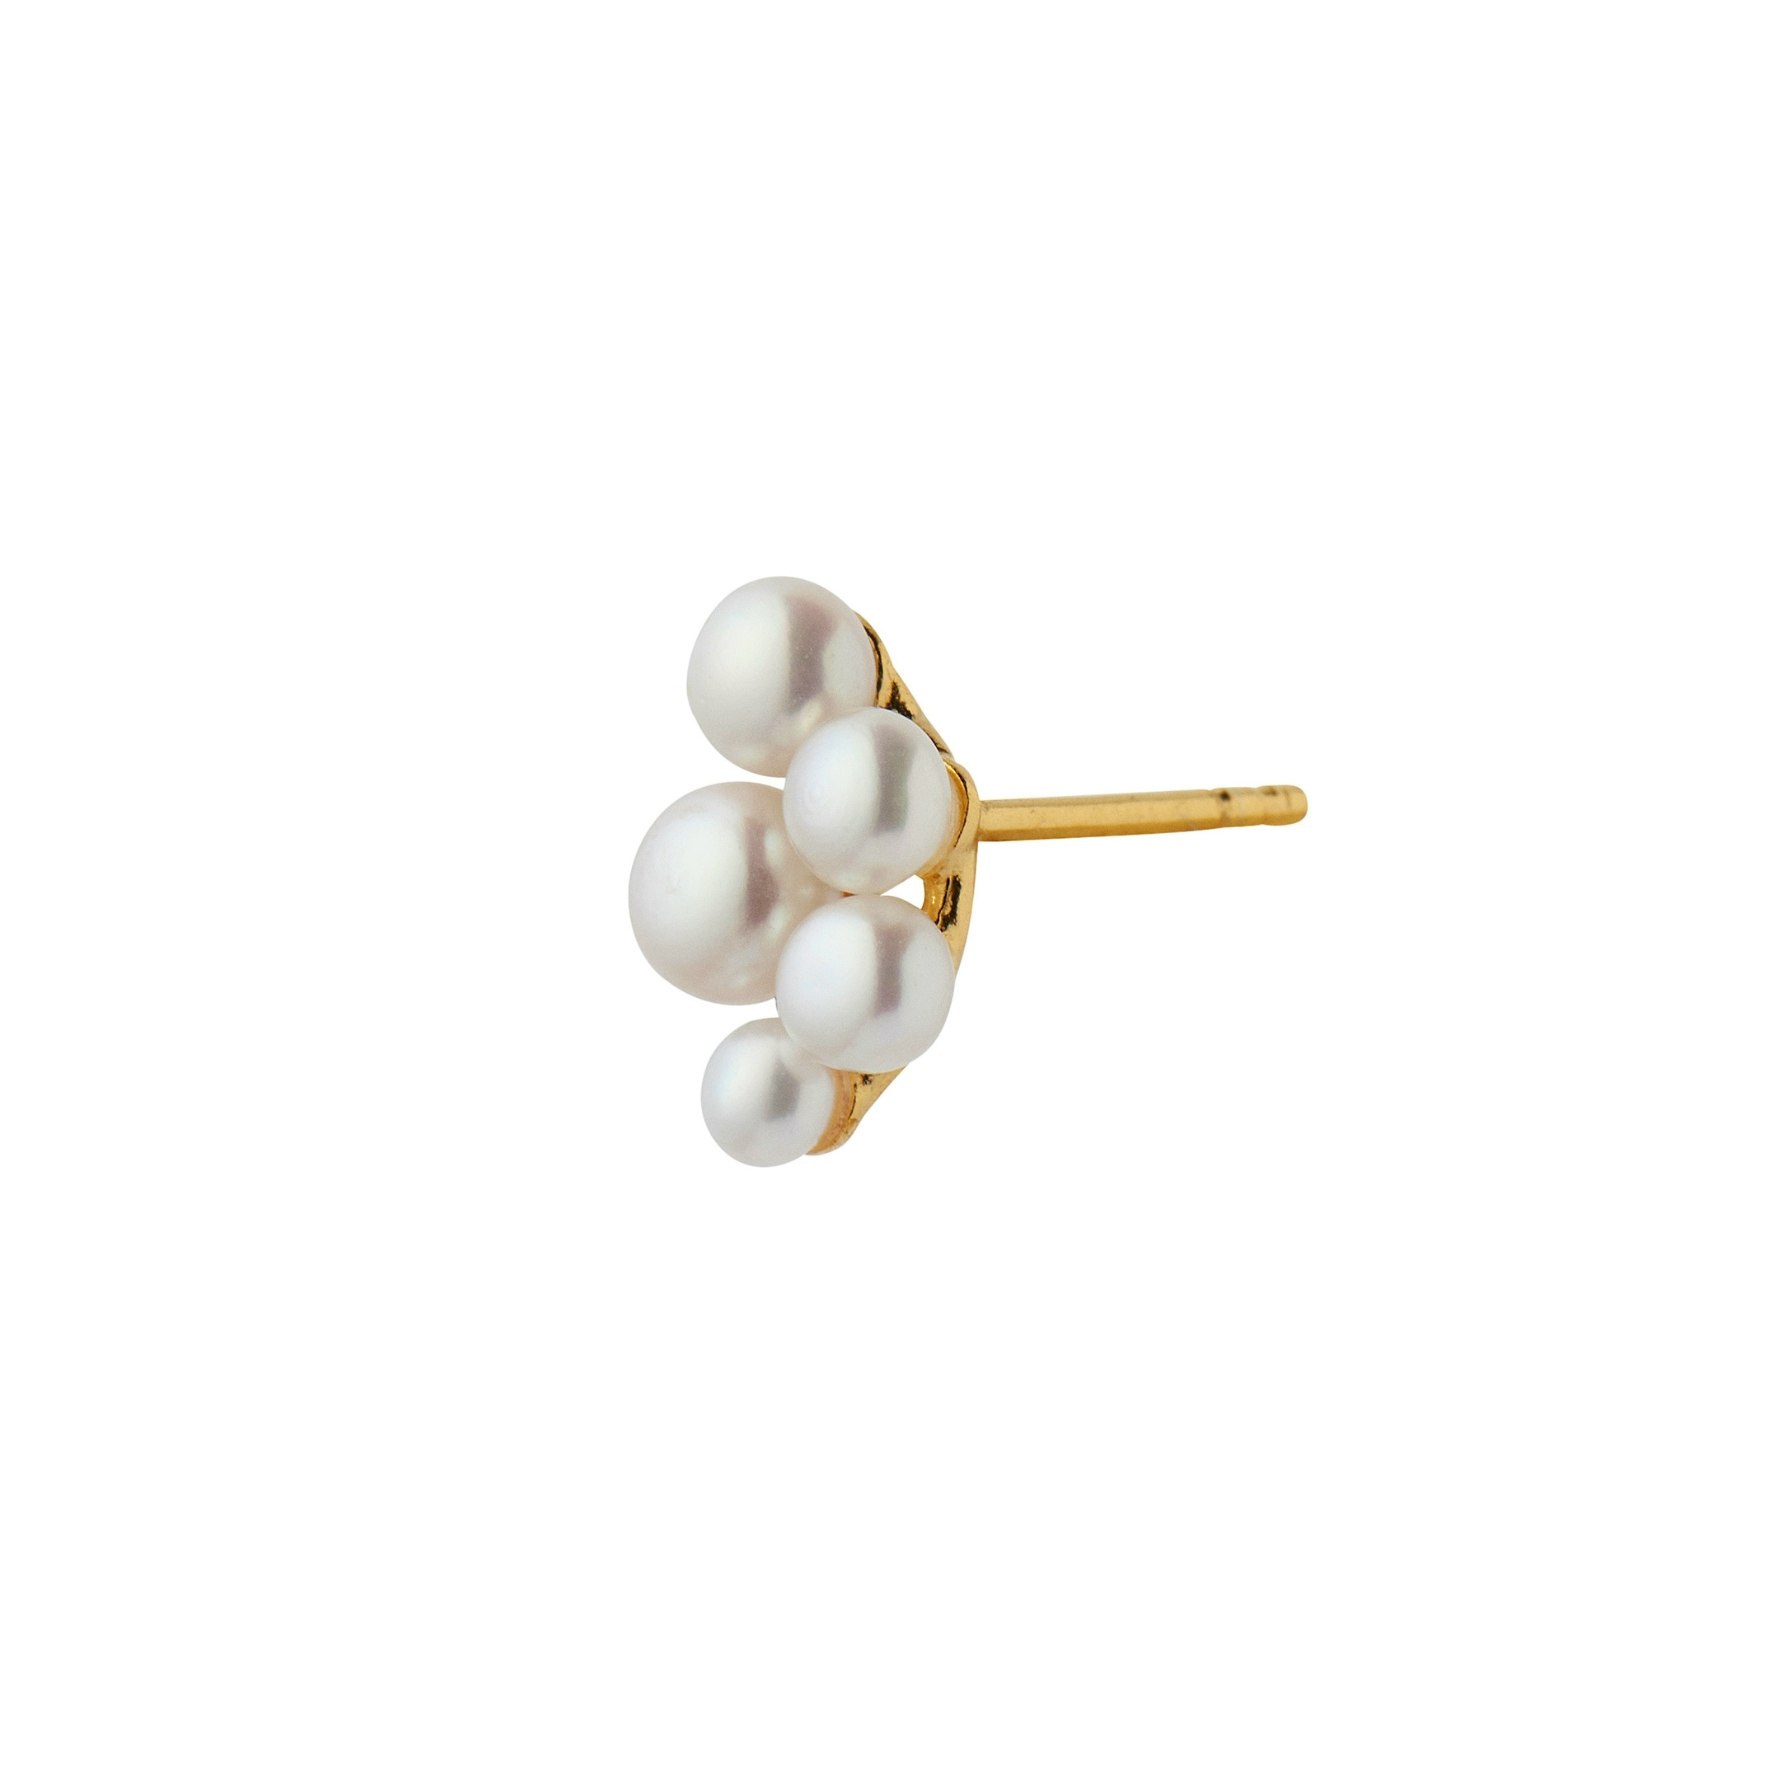 Bloom Berries Earring van STINE A Jewelry in Verguld-Zilver Sterling 925